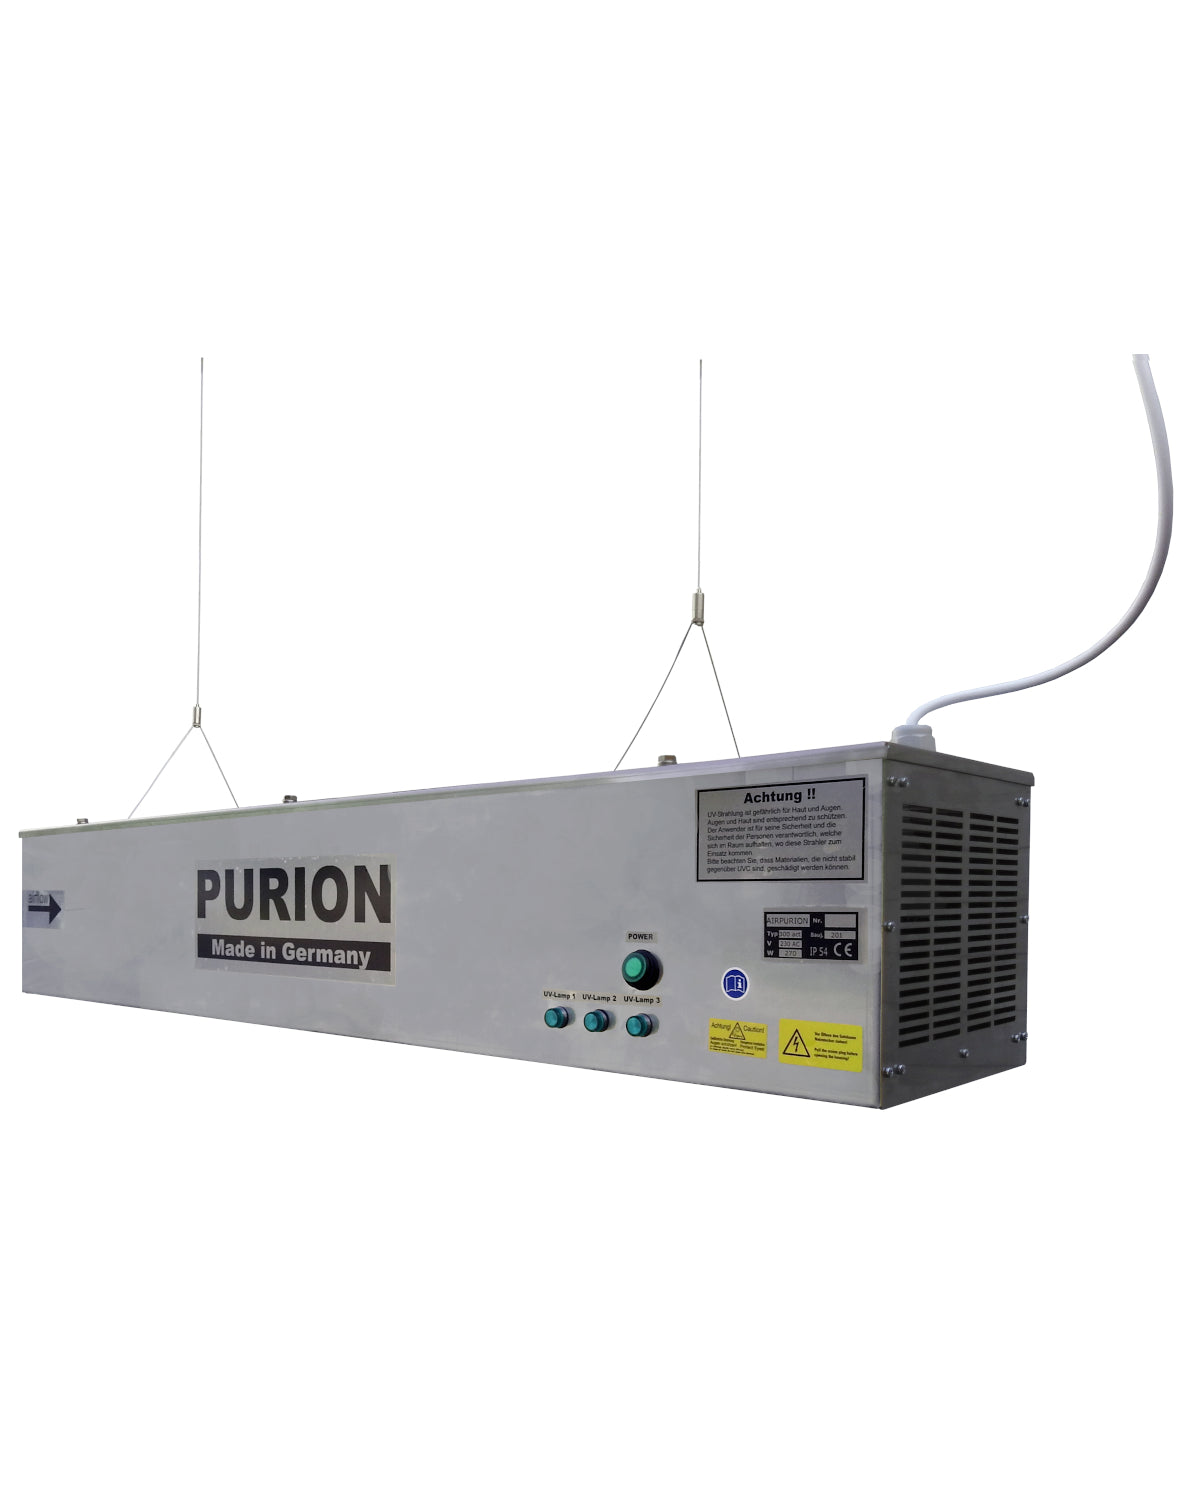 Der Ionisator AIRPURION 300 active Plus der PURION GmbH ist ein hochmodernes Gerät, das eine außergewöhnliche Luftreinigungs- und Desinfektionsleistung bietet. Mit seiner hochmodernen Technologie beseitigt der AIRPURION 300 active Plus Ionisator effektiv schädliche Partikel aus der Luft und